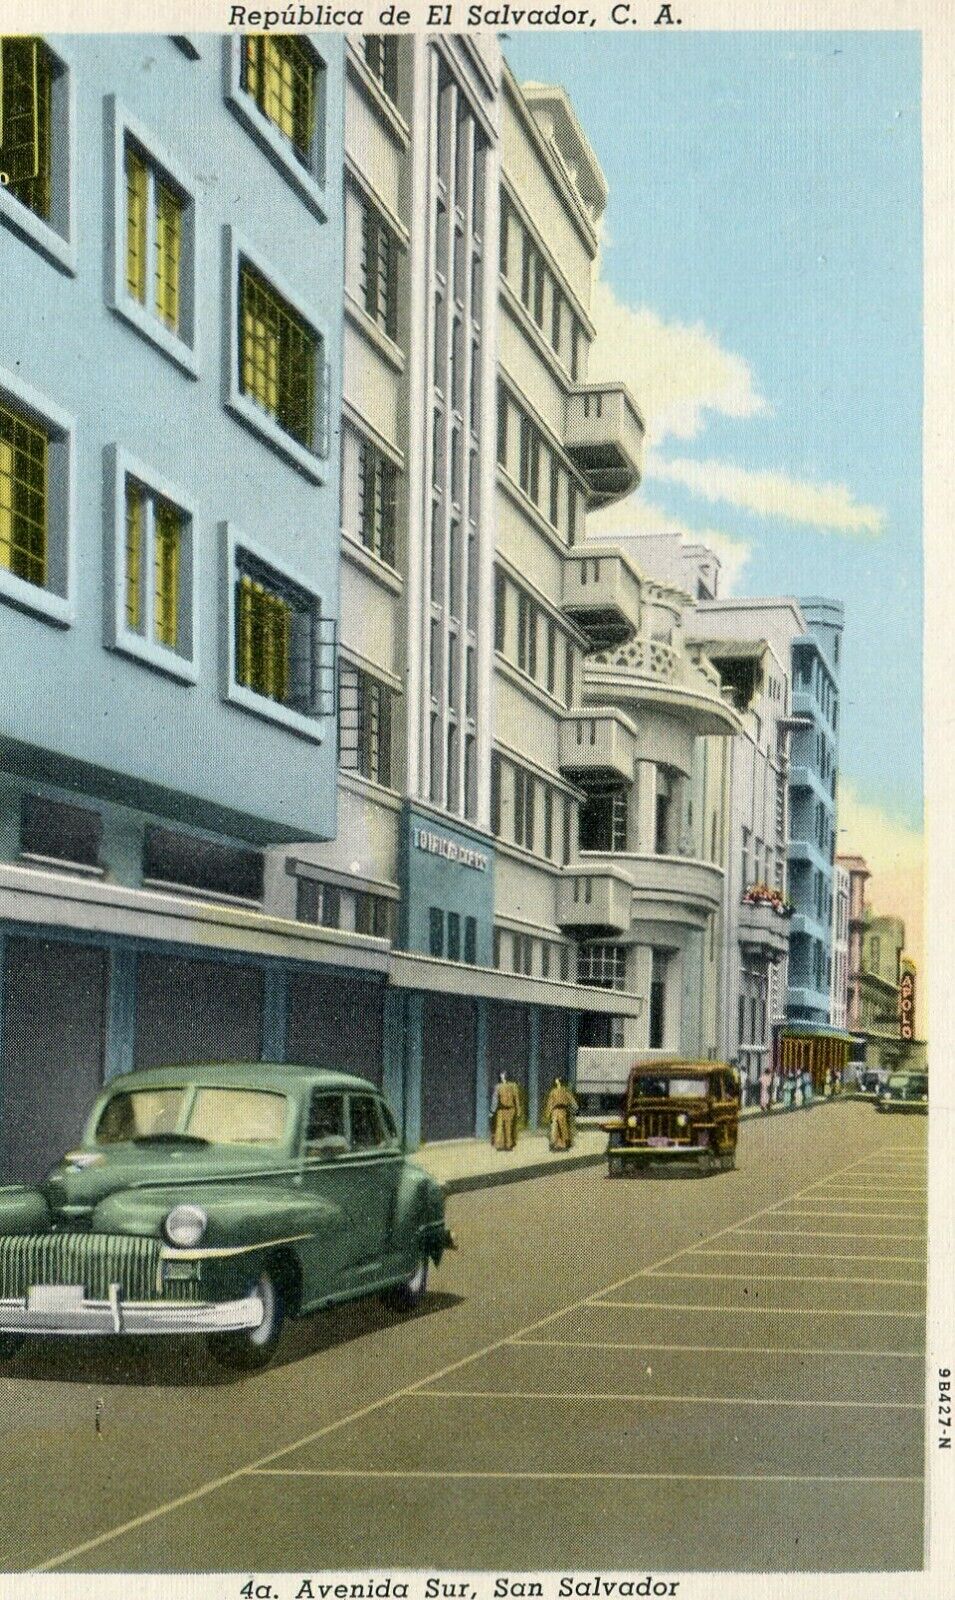 El San Salvador - 4a Avenida Sur. old postcard